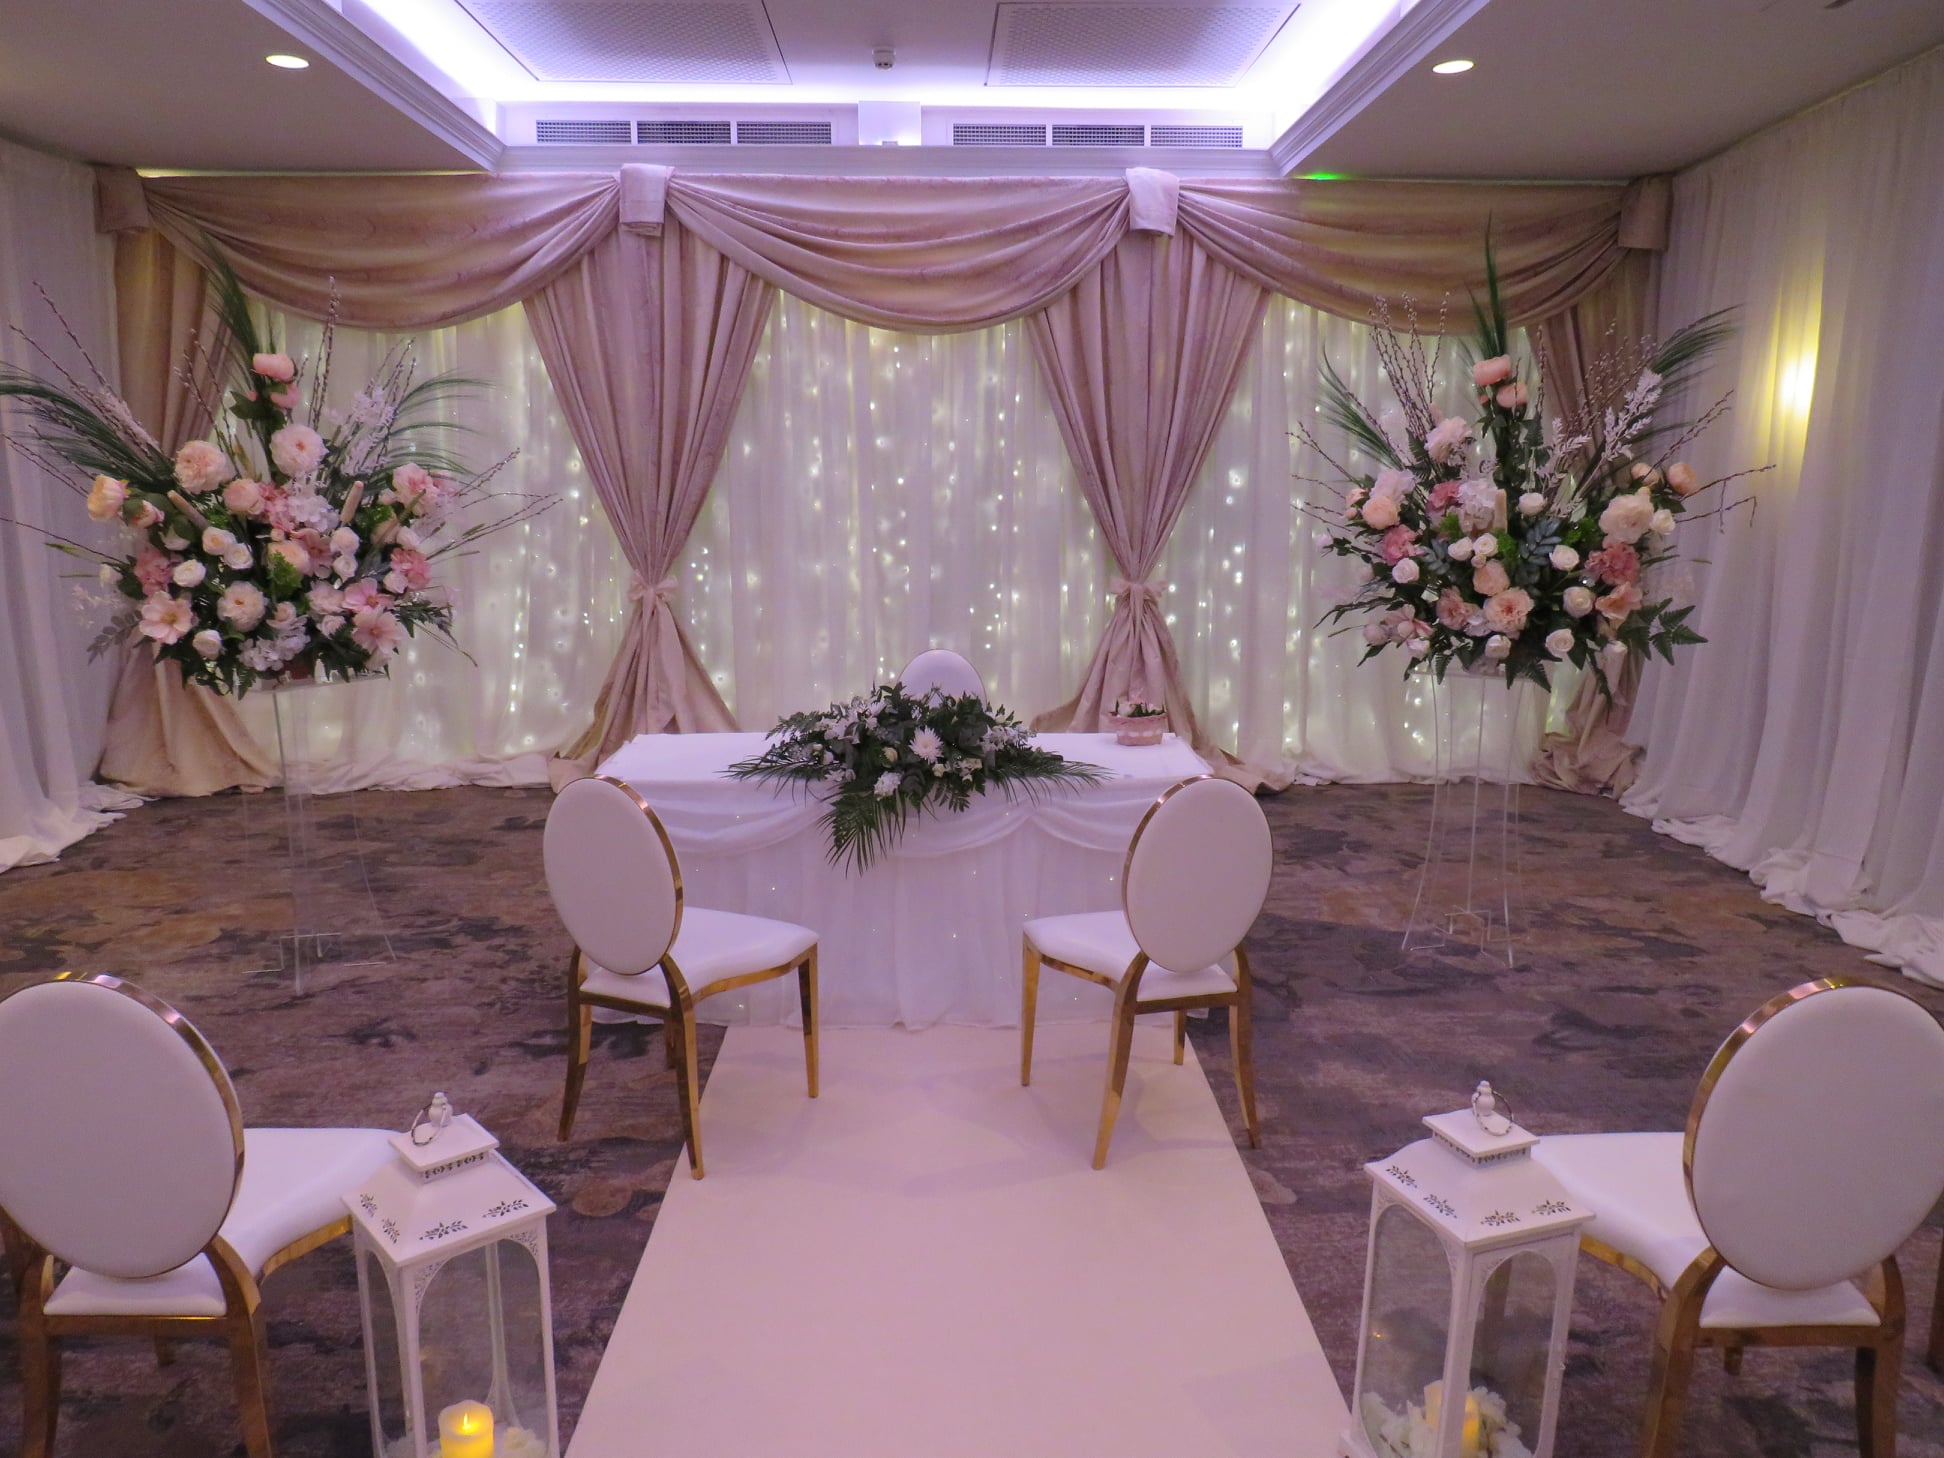 Civil-ceremony-decor